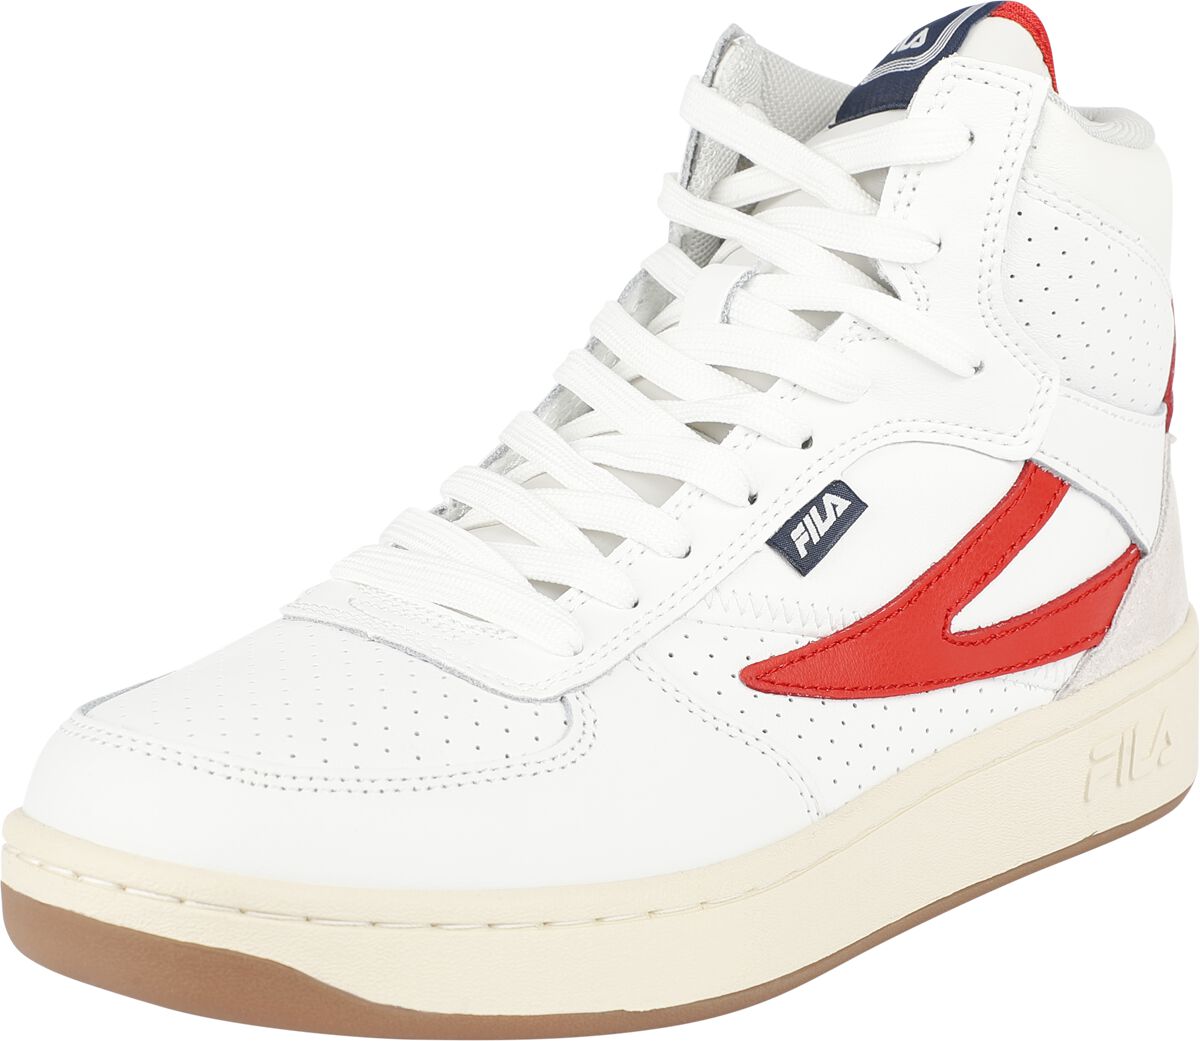 Fila FILA SEVARO mid wmn Sneaker high weiß rot in EU37